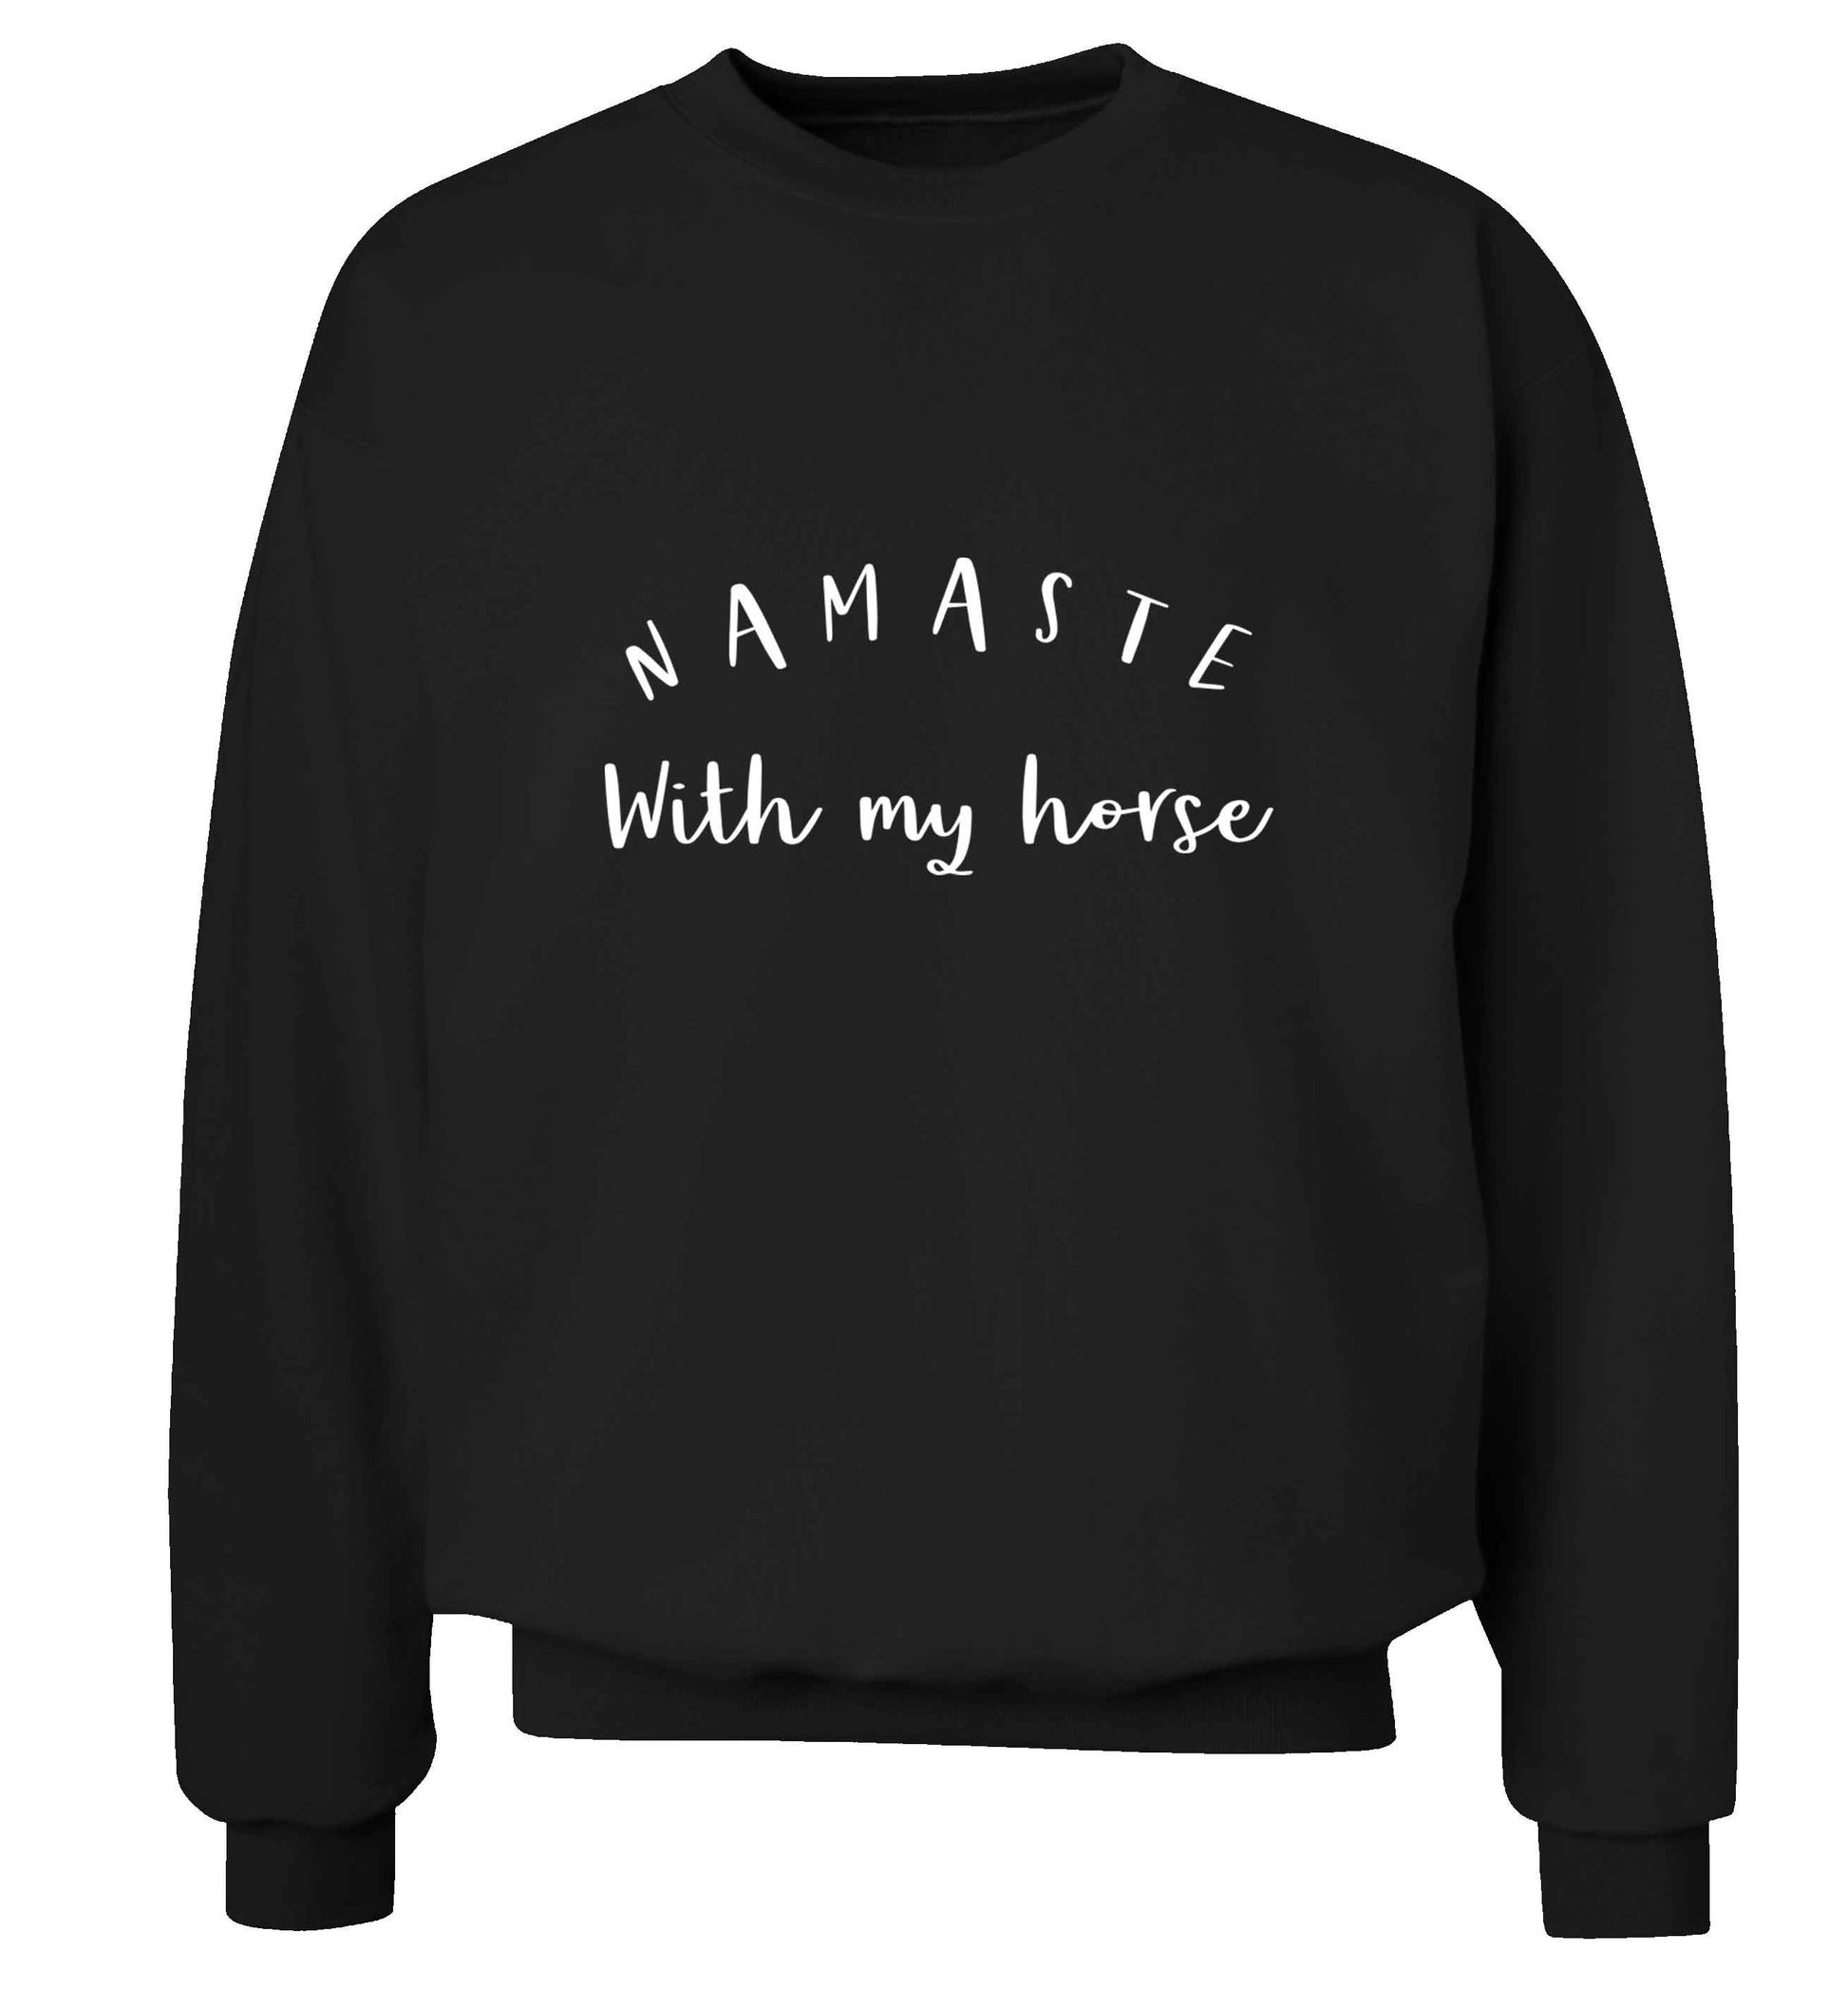 Namaste with my horse adult's unisex black sweater 2XL